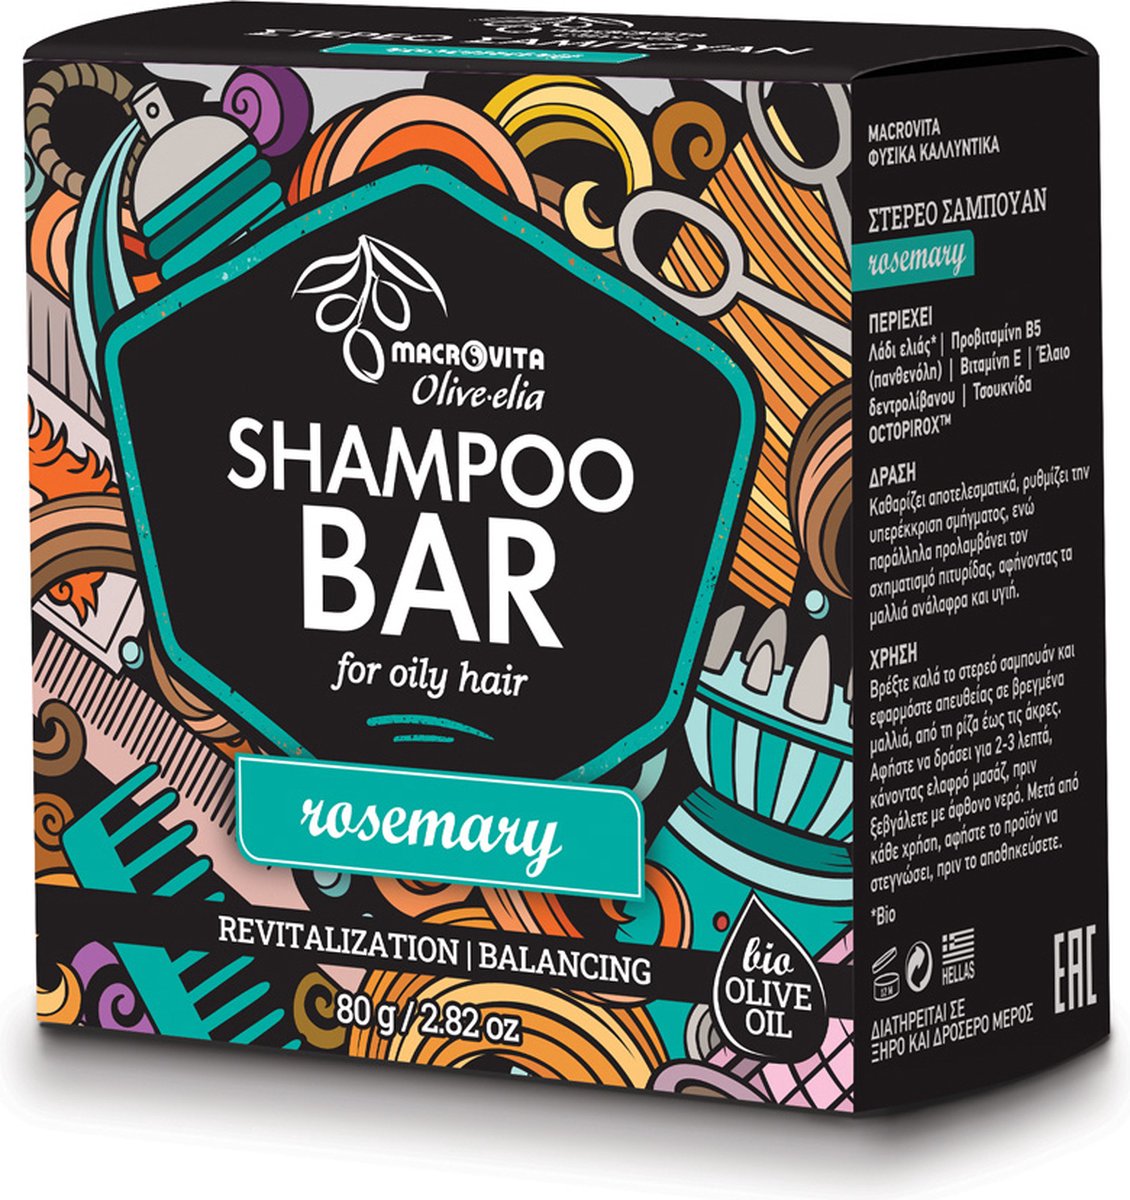 Olive-elia Shampoo Bar tegen Vet Haar (Rozemarijn) - 80 gram